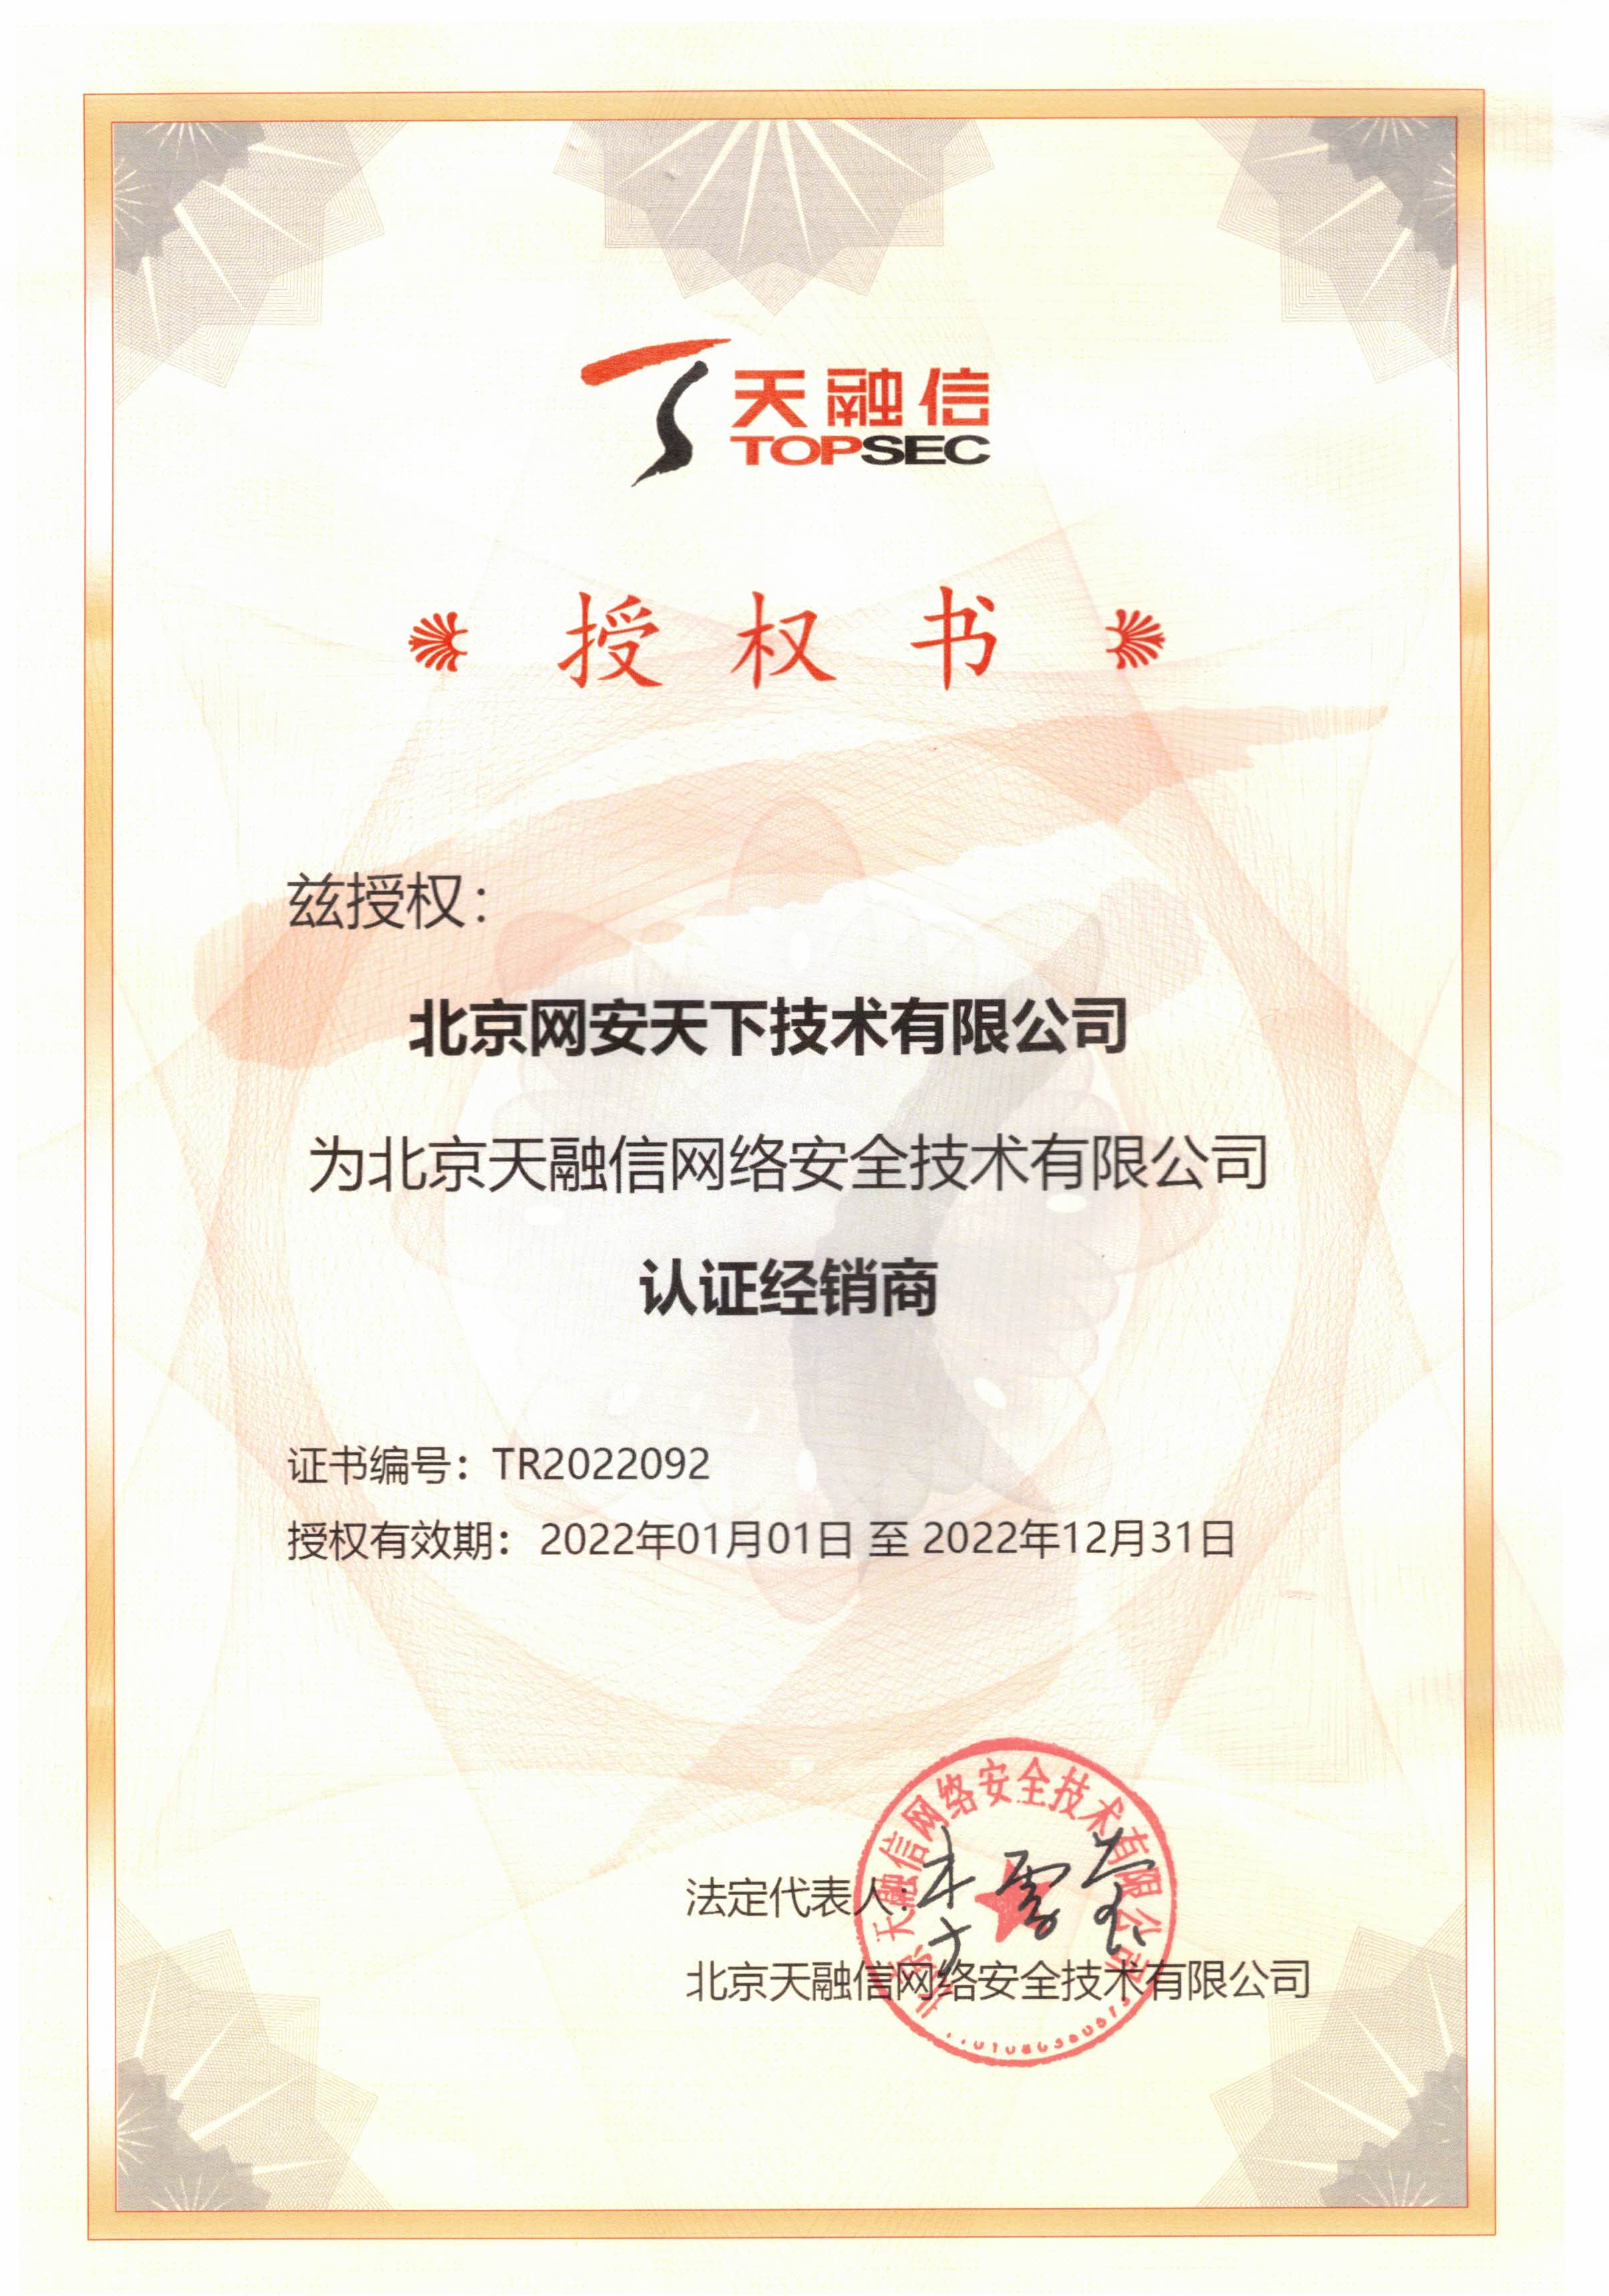 網安天下(xià)簽約2022年度天融信科技集團代理(lǐ)商